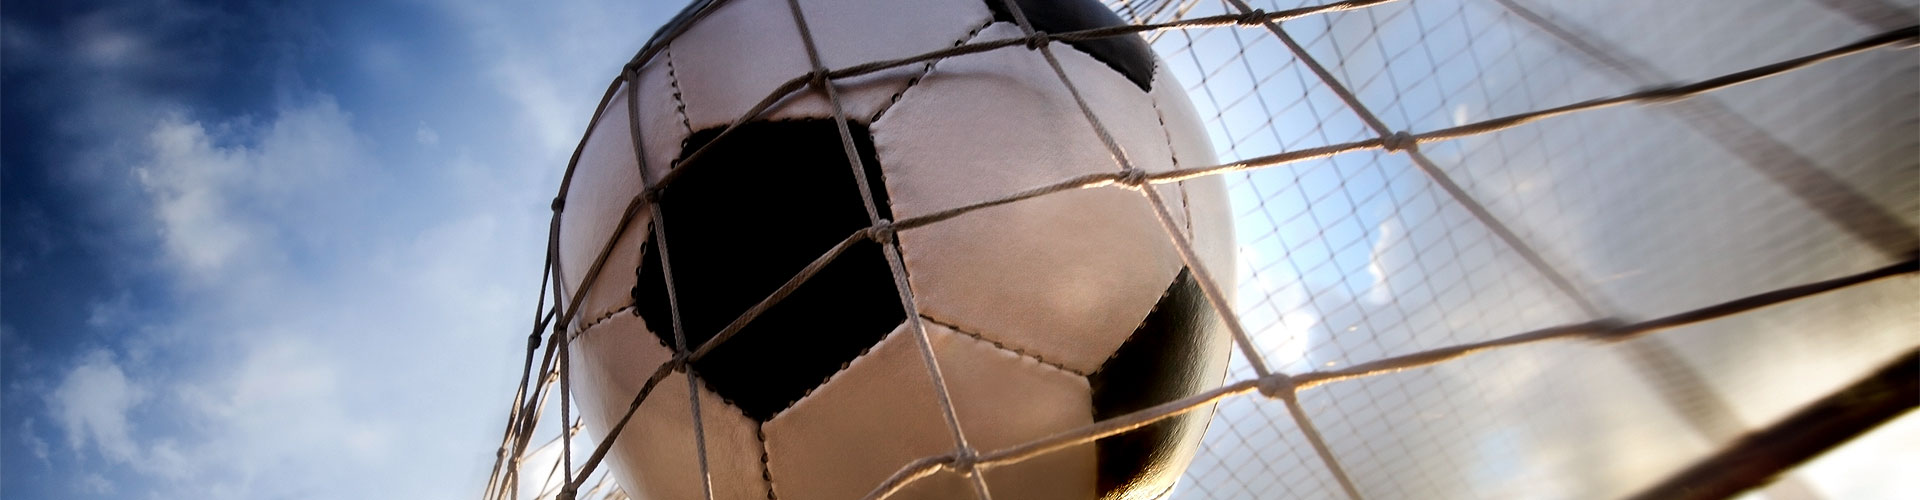 Ver la Eurocopa 2020 de fútbol en vivo en Extramiana
        
        


	    
           
           


          
          
          
